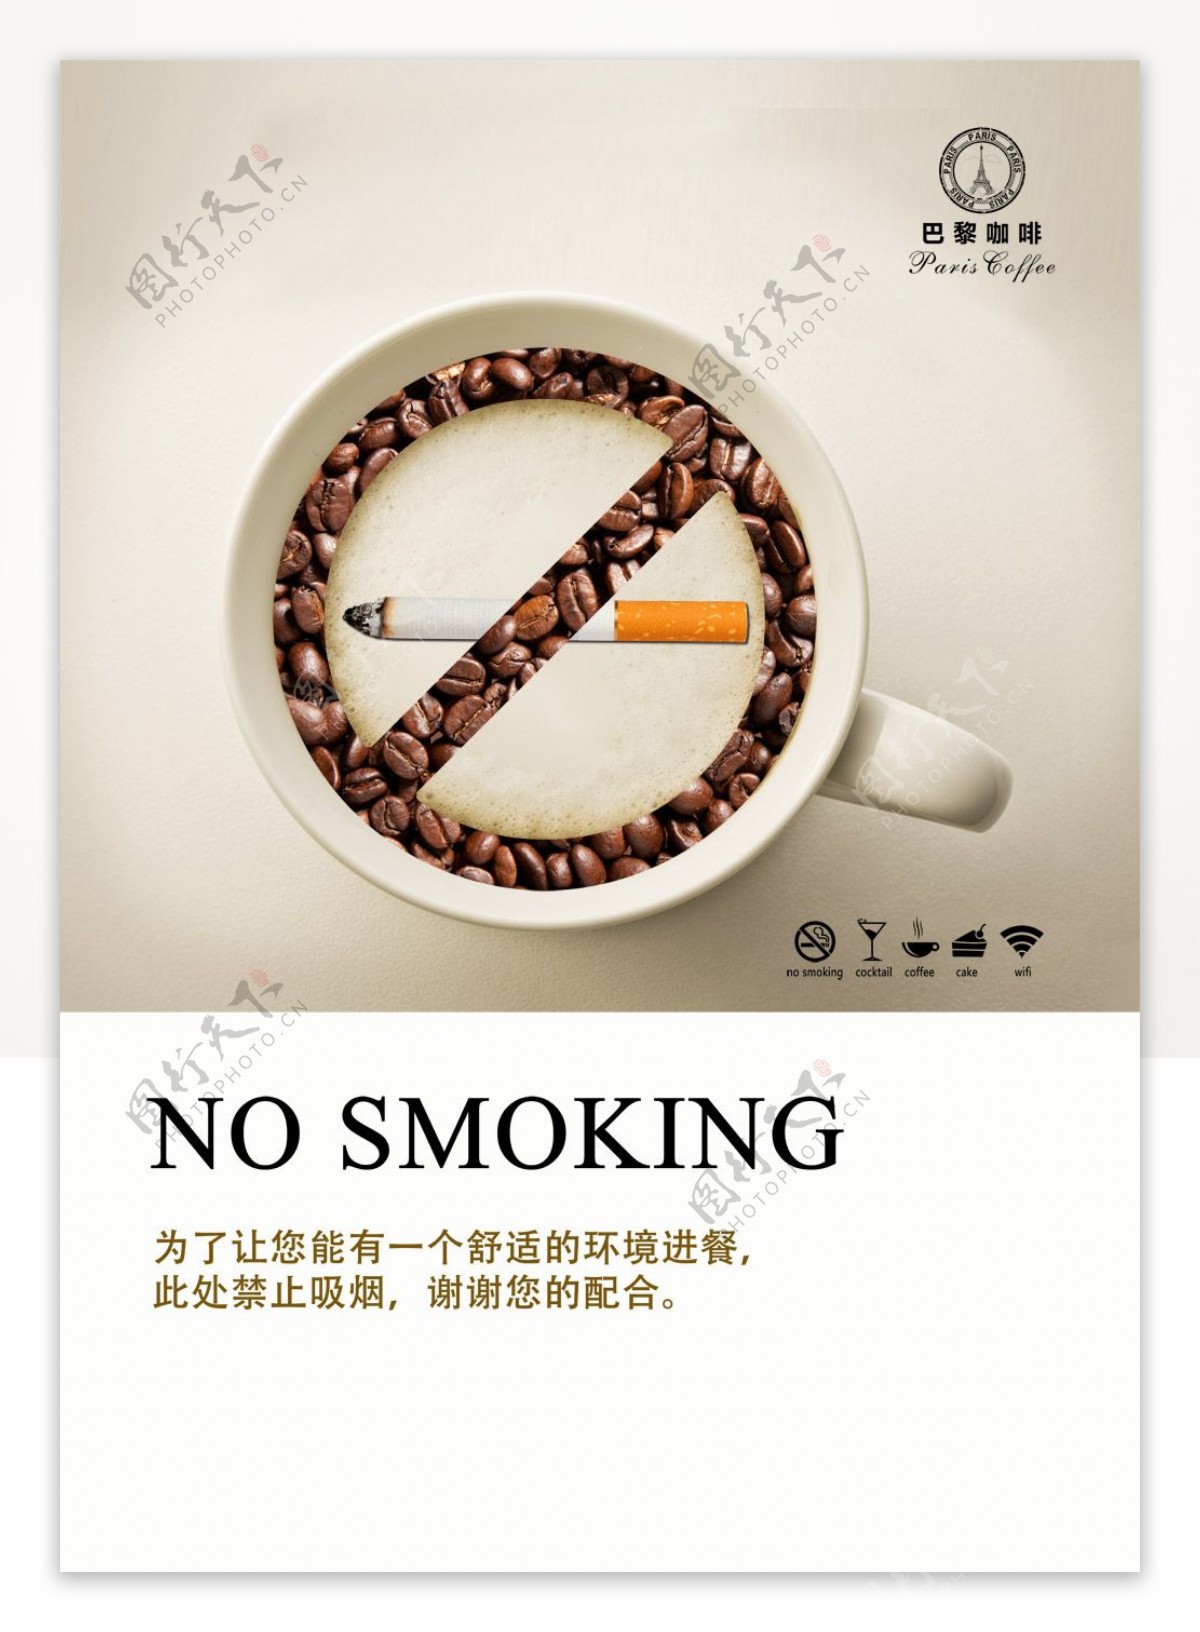 严禁吸烟提示宣传画报PSD素